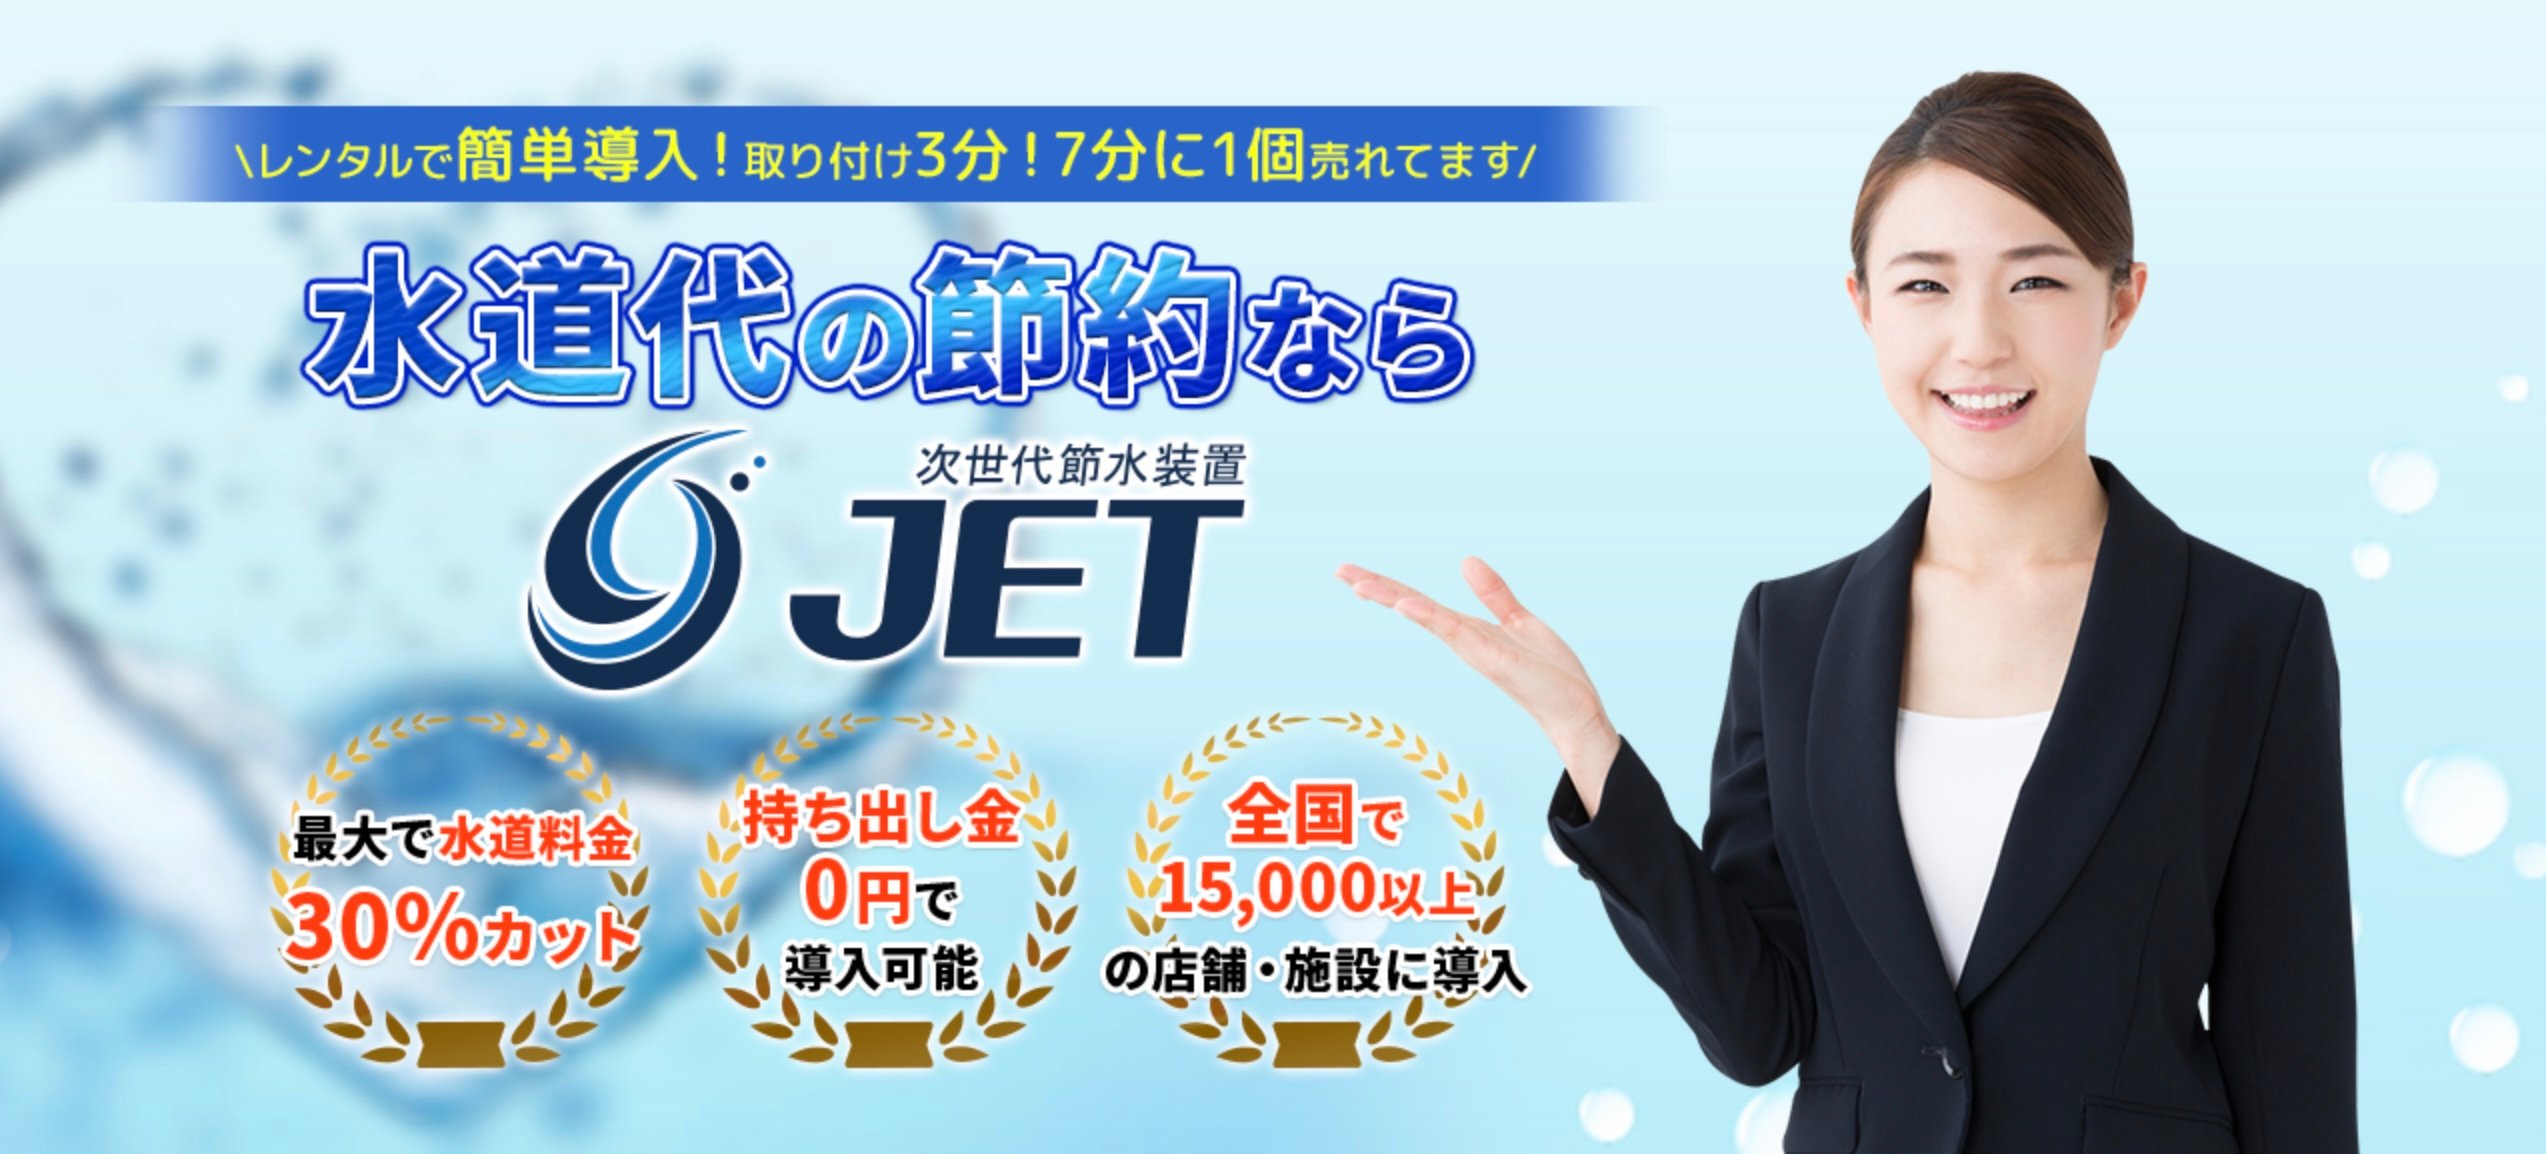 jet_top